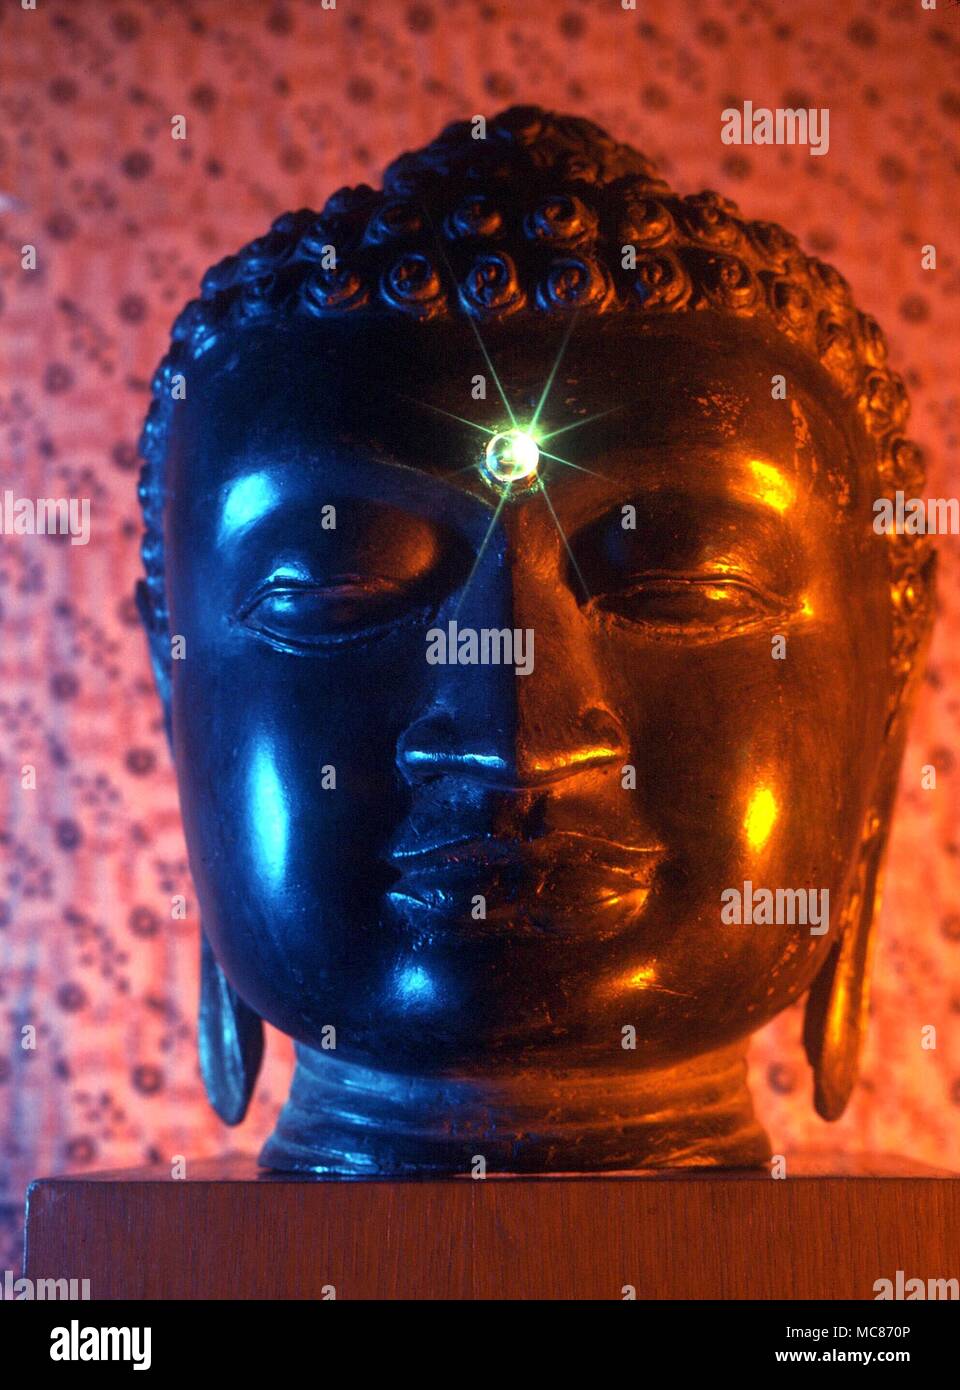 Drittes Auge - Das dekorative Element zwischen die Augen von vielen östlichen Statuen der Götter, himmlische Wesen und (hier) Buddhas, das Dritte Auge symbolisieren, die voll entwickelte Organ der clarivoyance Stockfoto